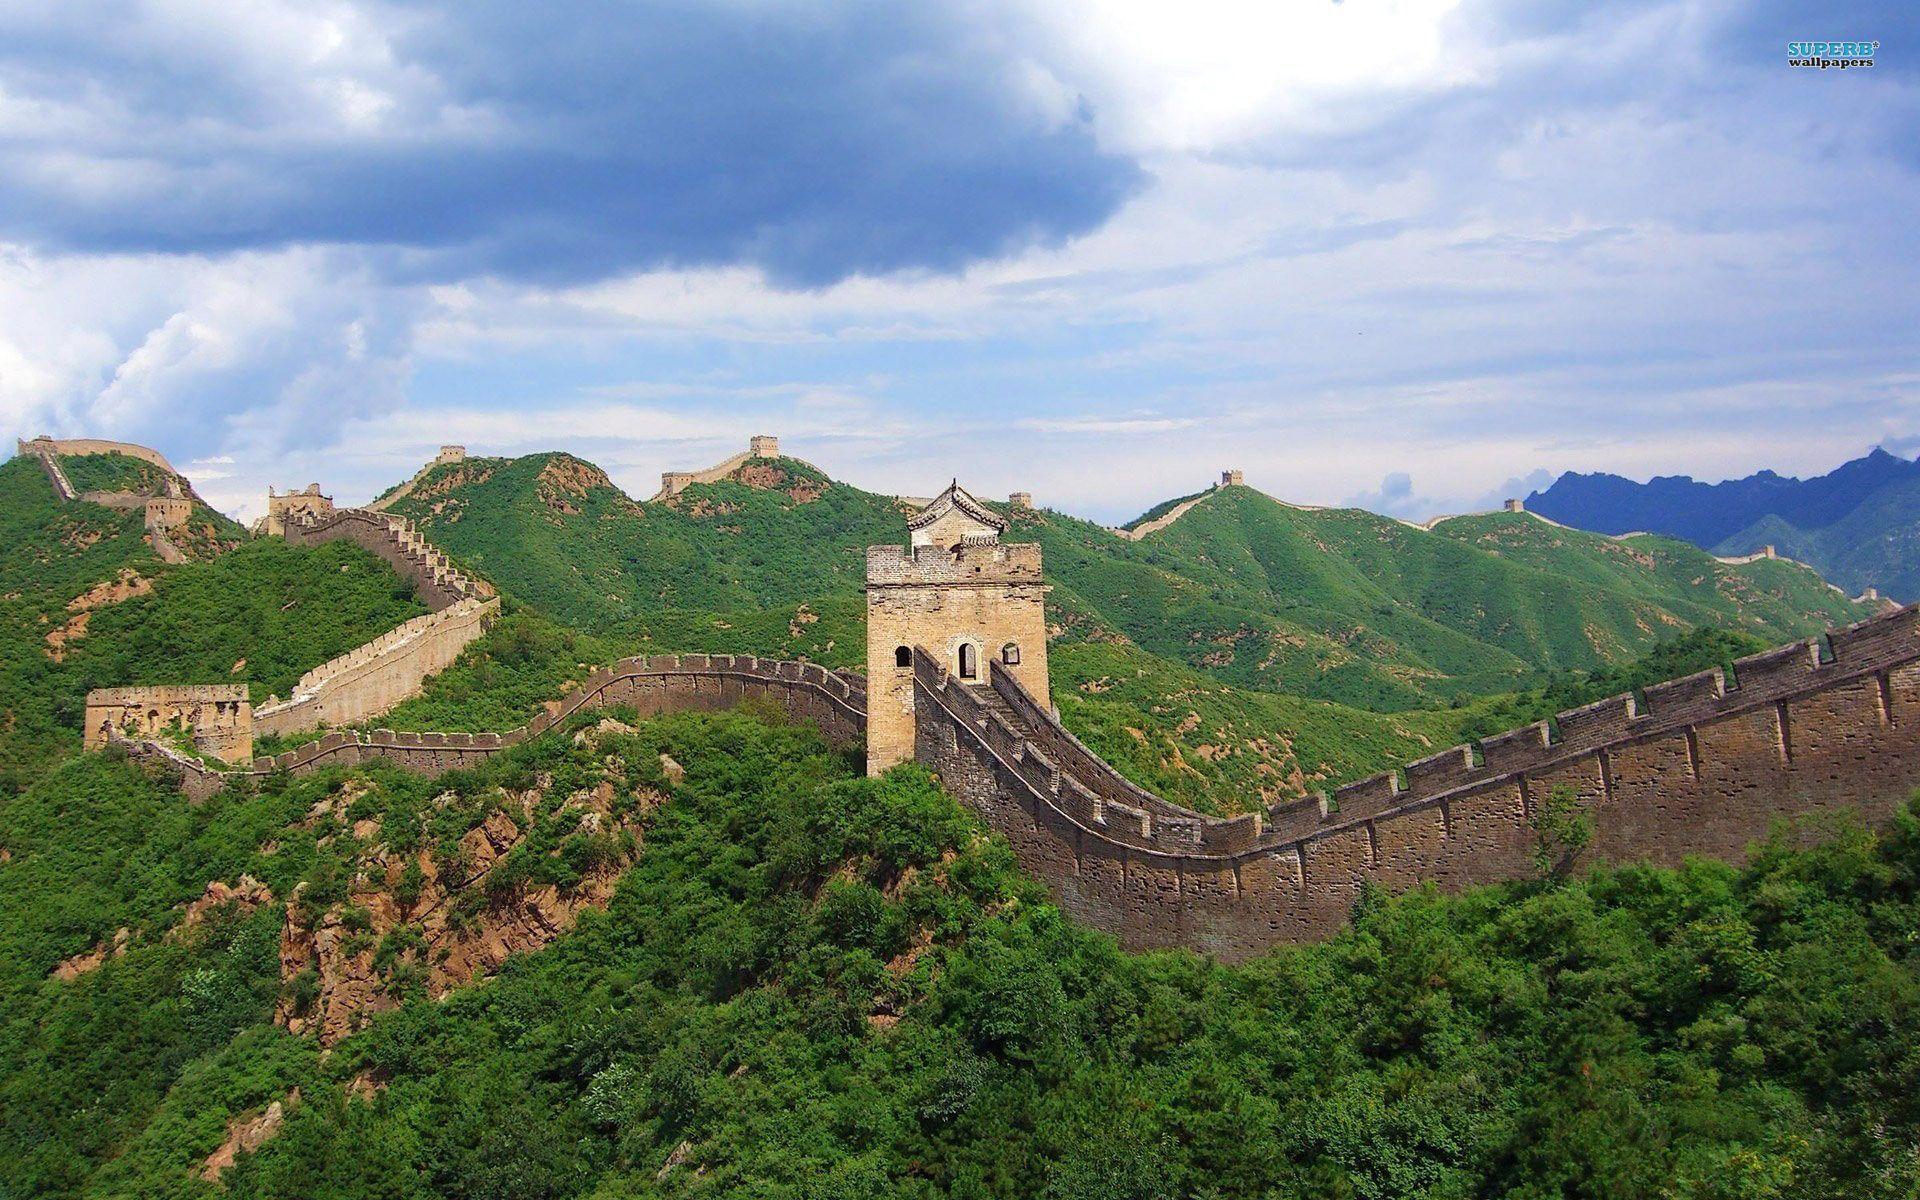 Great Wall Of China Seven wallpaper. Great Wall Of China Seven